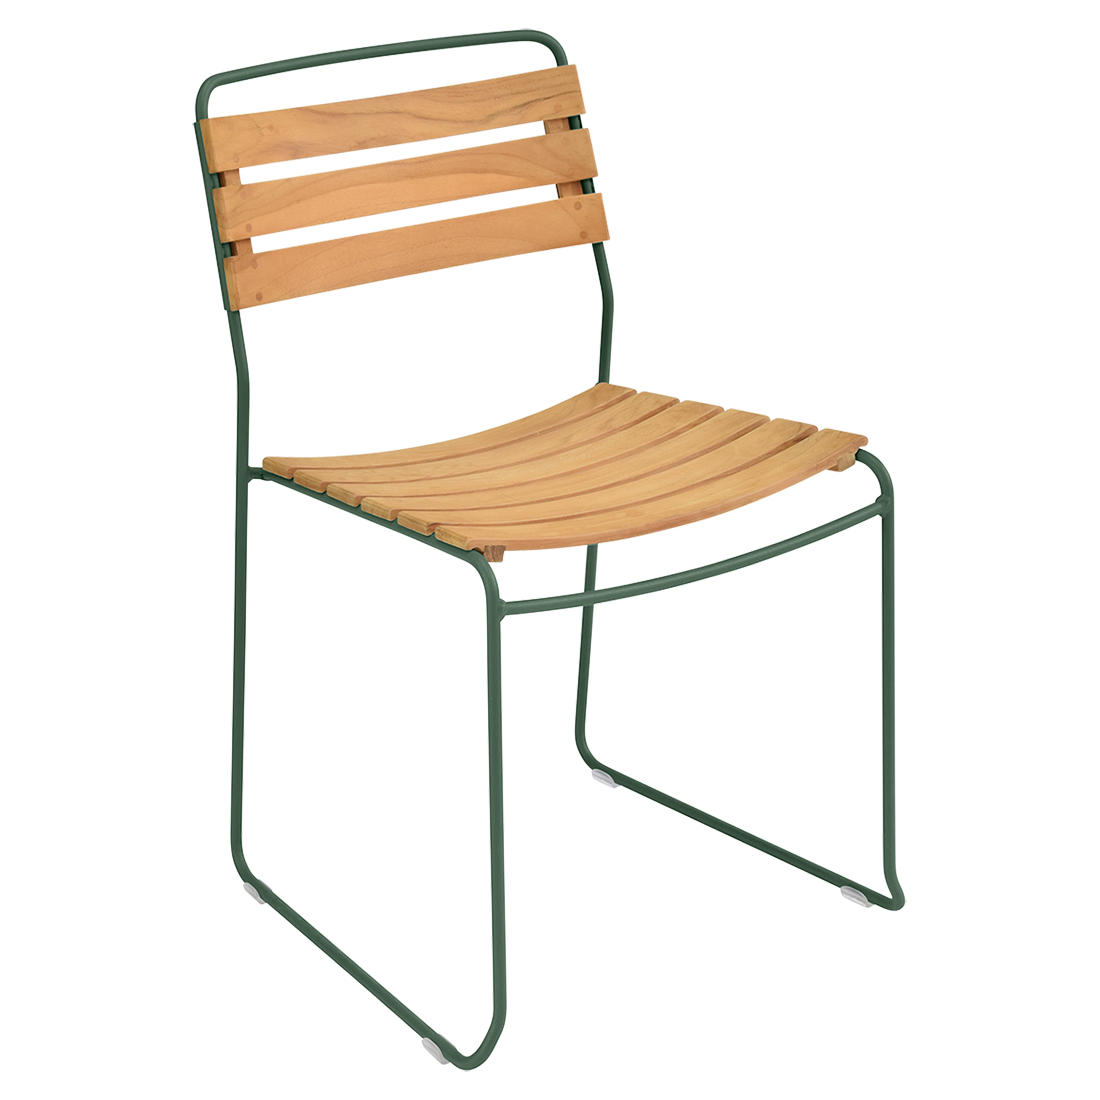 chaise surprising, chaise fermob, chaise bois et metal, chaise de jardin, chaise design, chaise bois et vert, guggenbichler